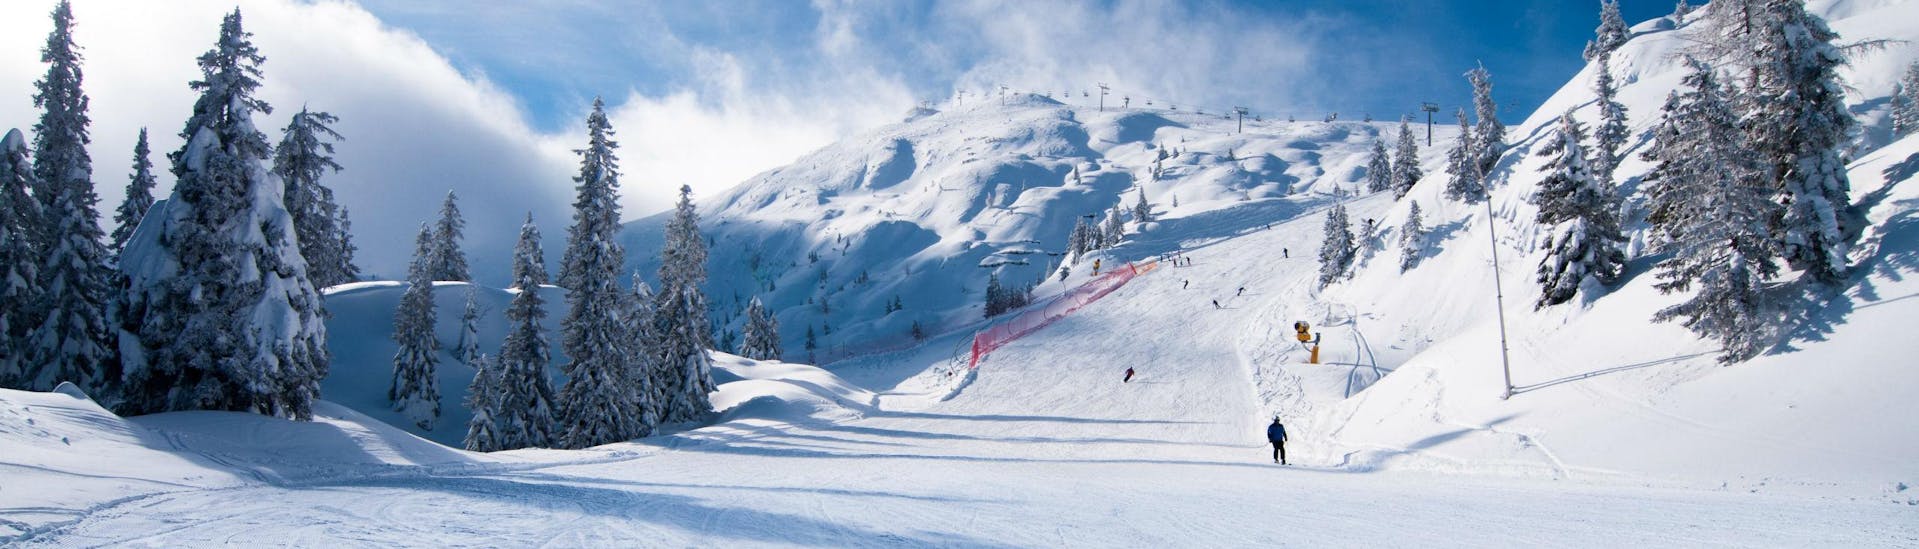 Una coppia di sciatori scia lungo una pista da sci appena battuta nella stazione sciistica italiana di Paganella Ski, dove le scuole di sci locali offrono numerose lezioni di sci.